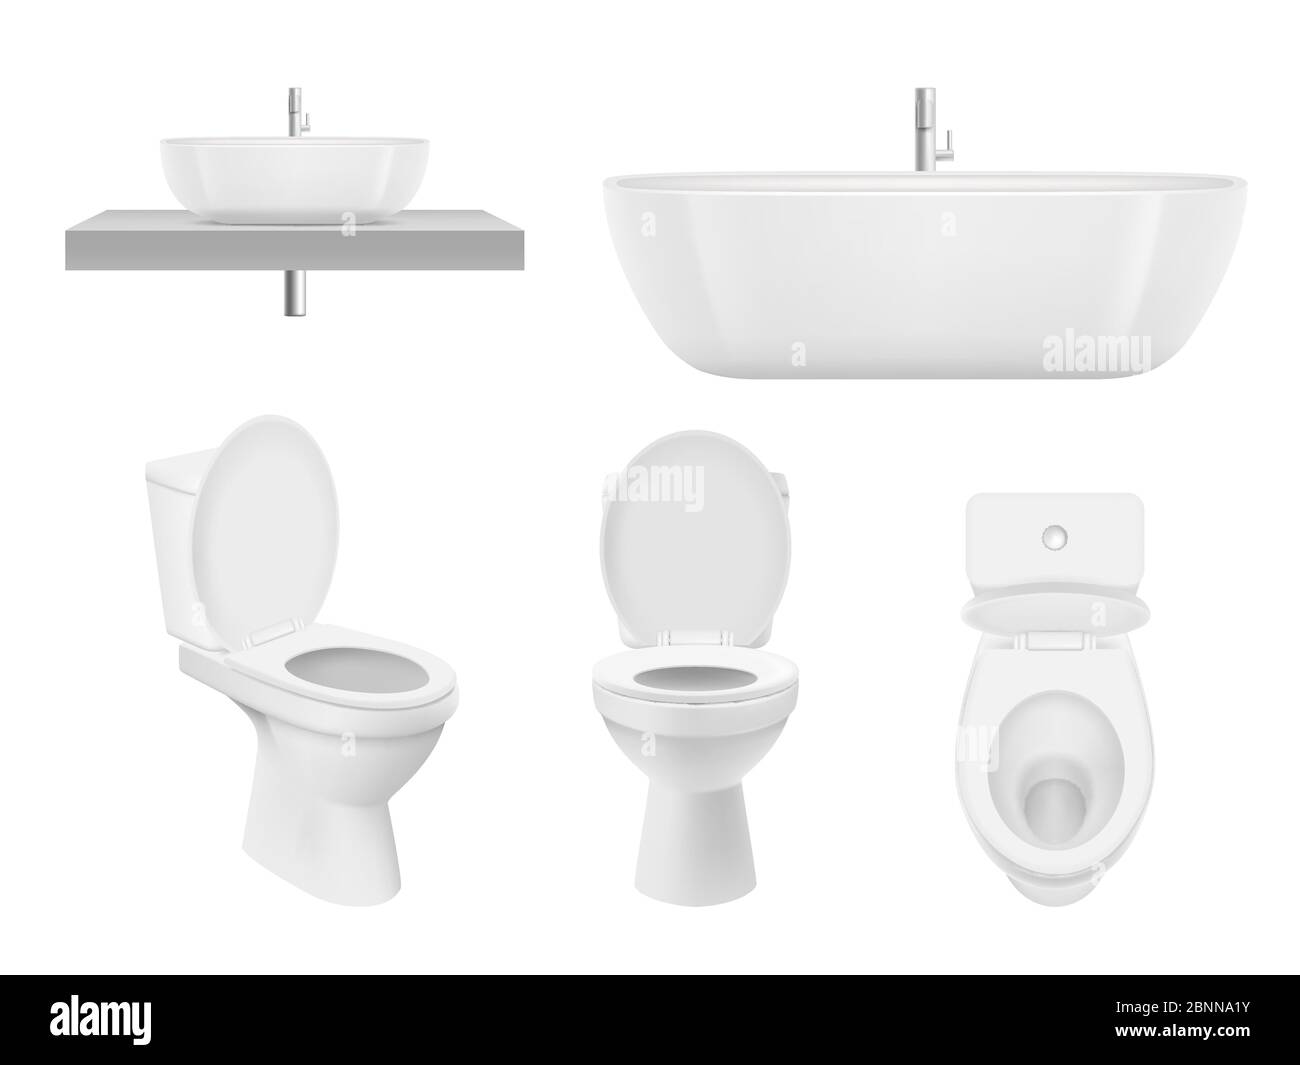 Realistische Badezimmer Kollektion. WC, Waschtisch Schüssel Bad Waschbecken sauber weiß für frische Waschbecken. Vektorbilder Stock Vektor